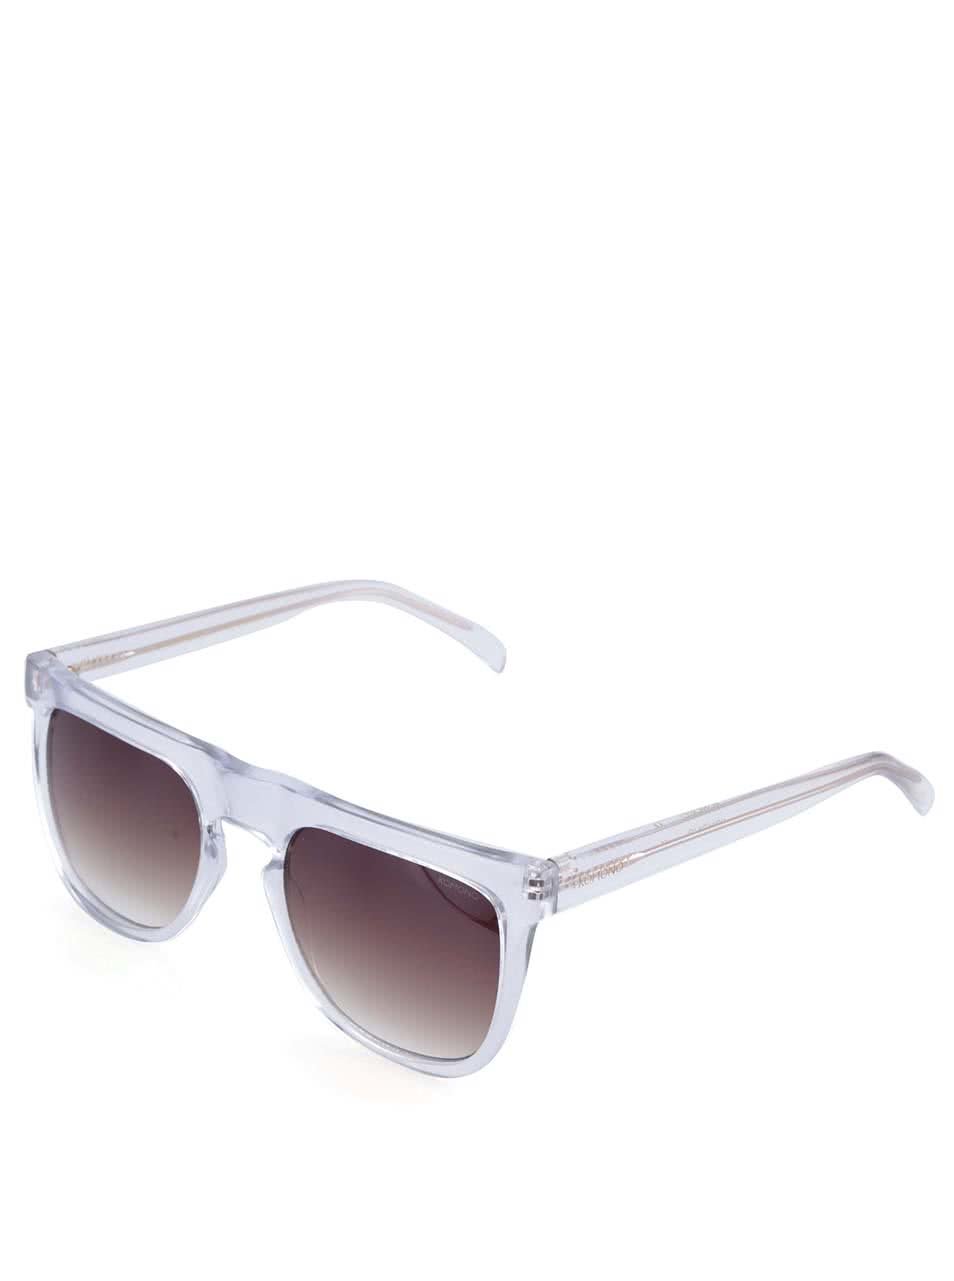 Transparentní hranaté unisex sluneční brýle Komono Bennet